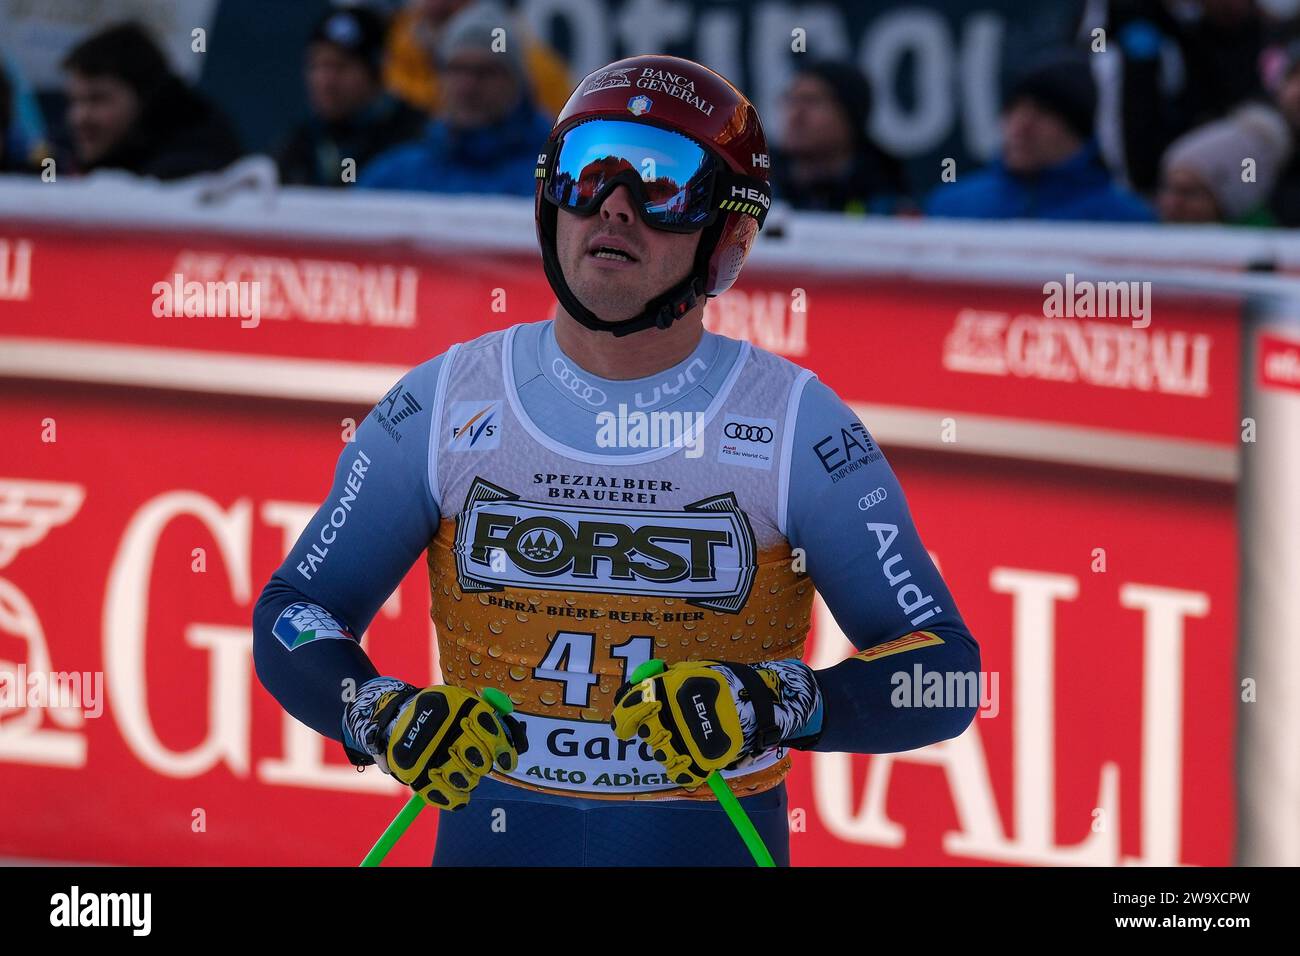 Guglielmo Bosca (ITA) gareggia durante la Coppa del mondo di sci alpino Audi FIS, MenÕs gara di Downhill sul Saslong Slope in Val Gardena il 16 dicembre 2023, in Val Gardena Foto Stock